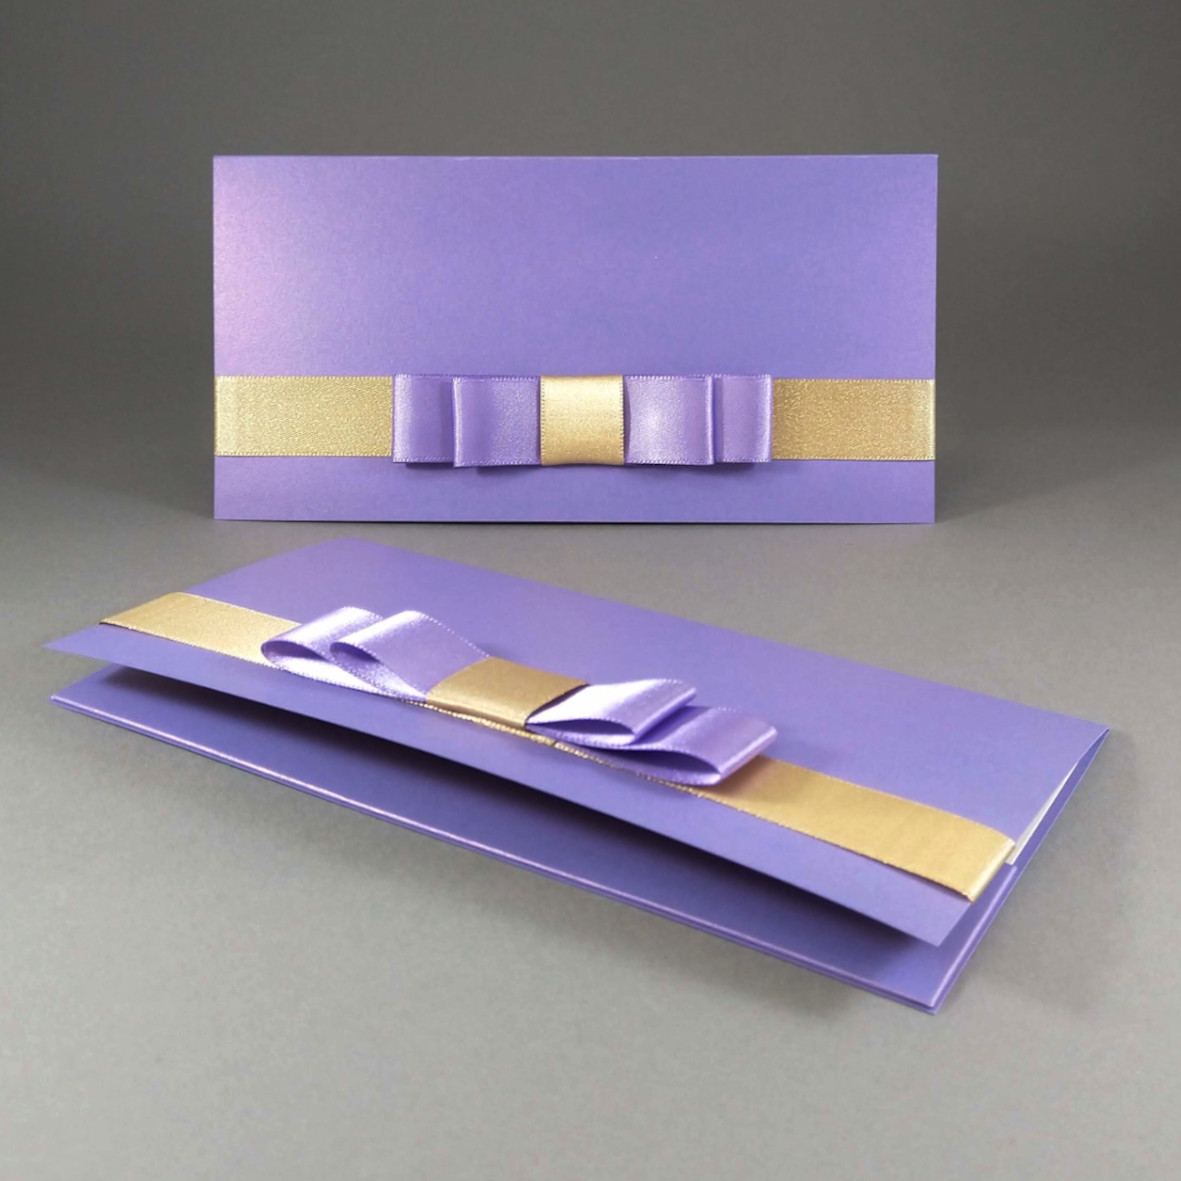 Dárková kapsa DL formátu z metalického, perleťového, fialového papíru, s aplikací z široké atlasové stuhy, celkový rozměr 206 × 106 mm.